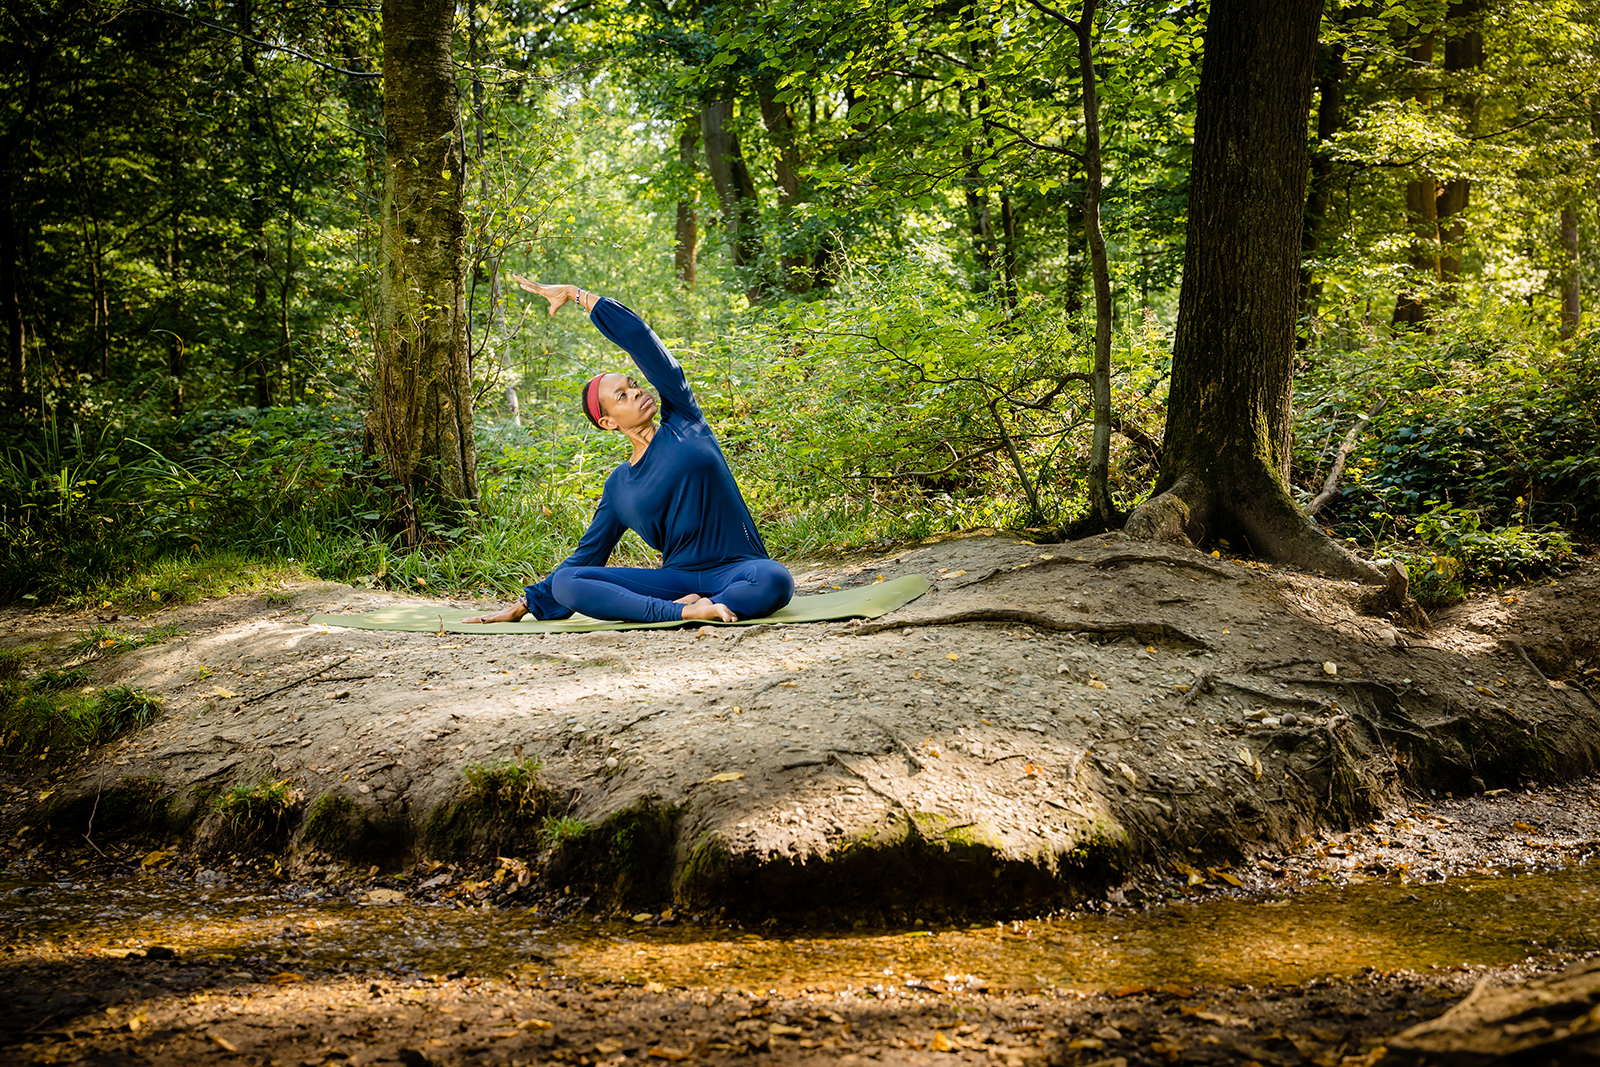 yoga teacher photo shoot in hertfordshire woods